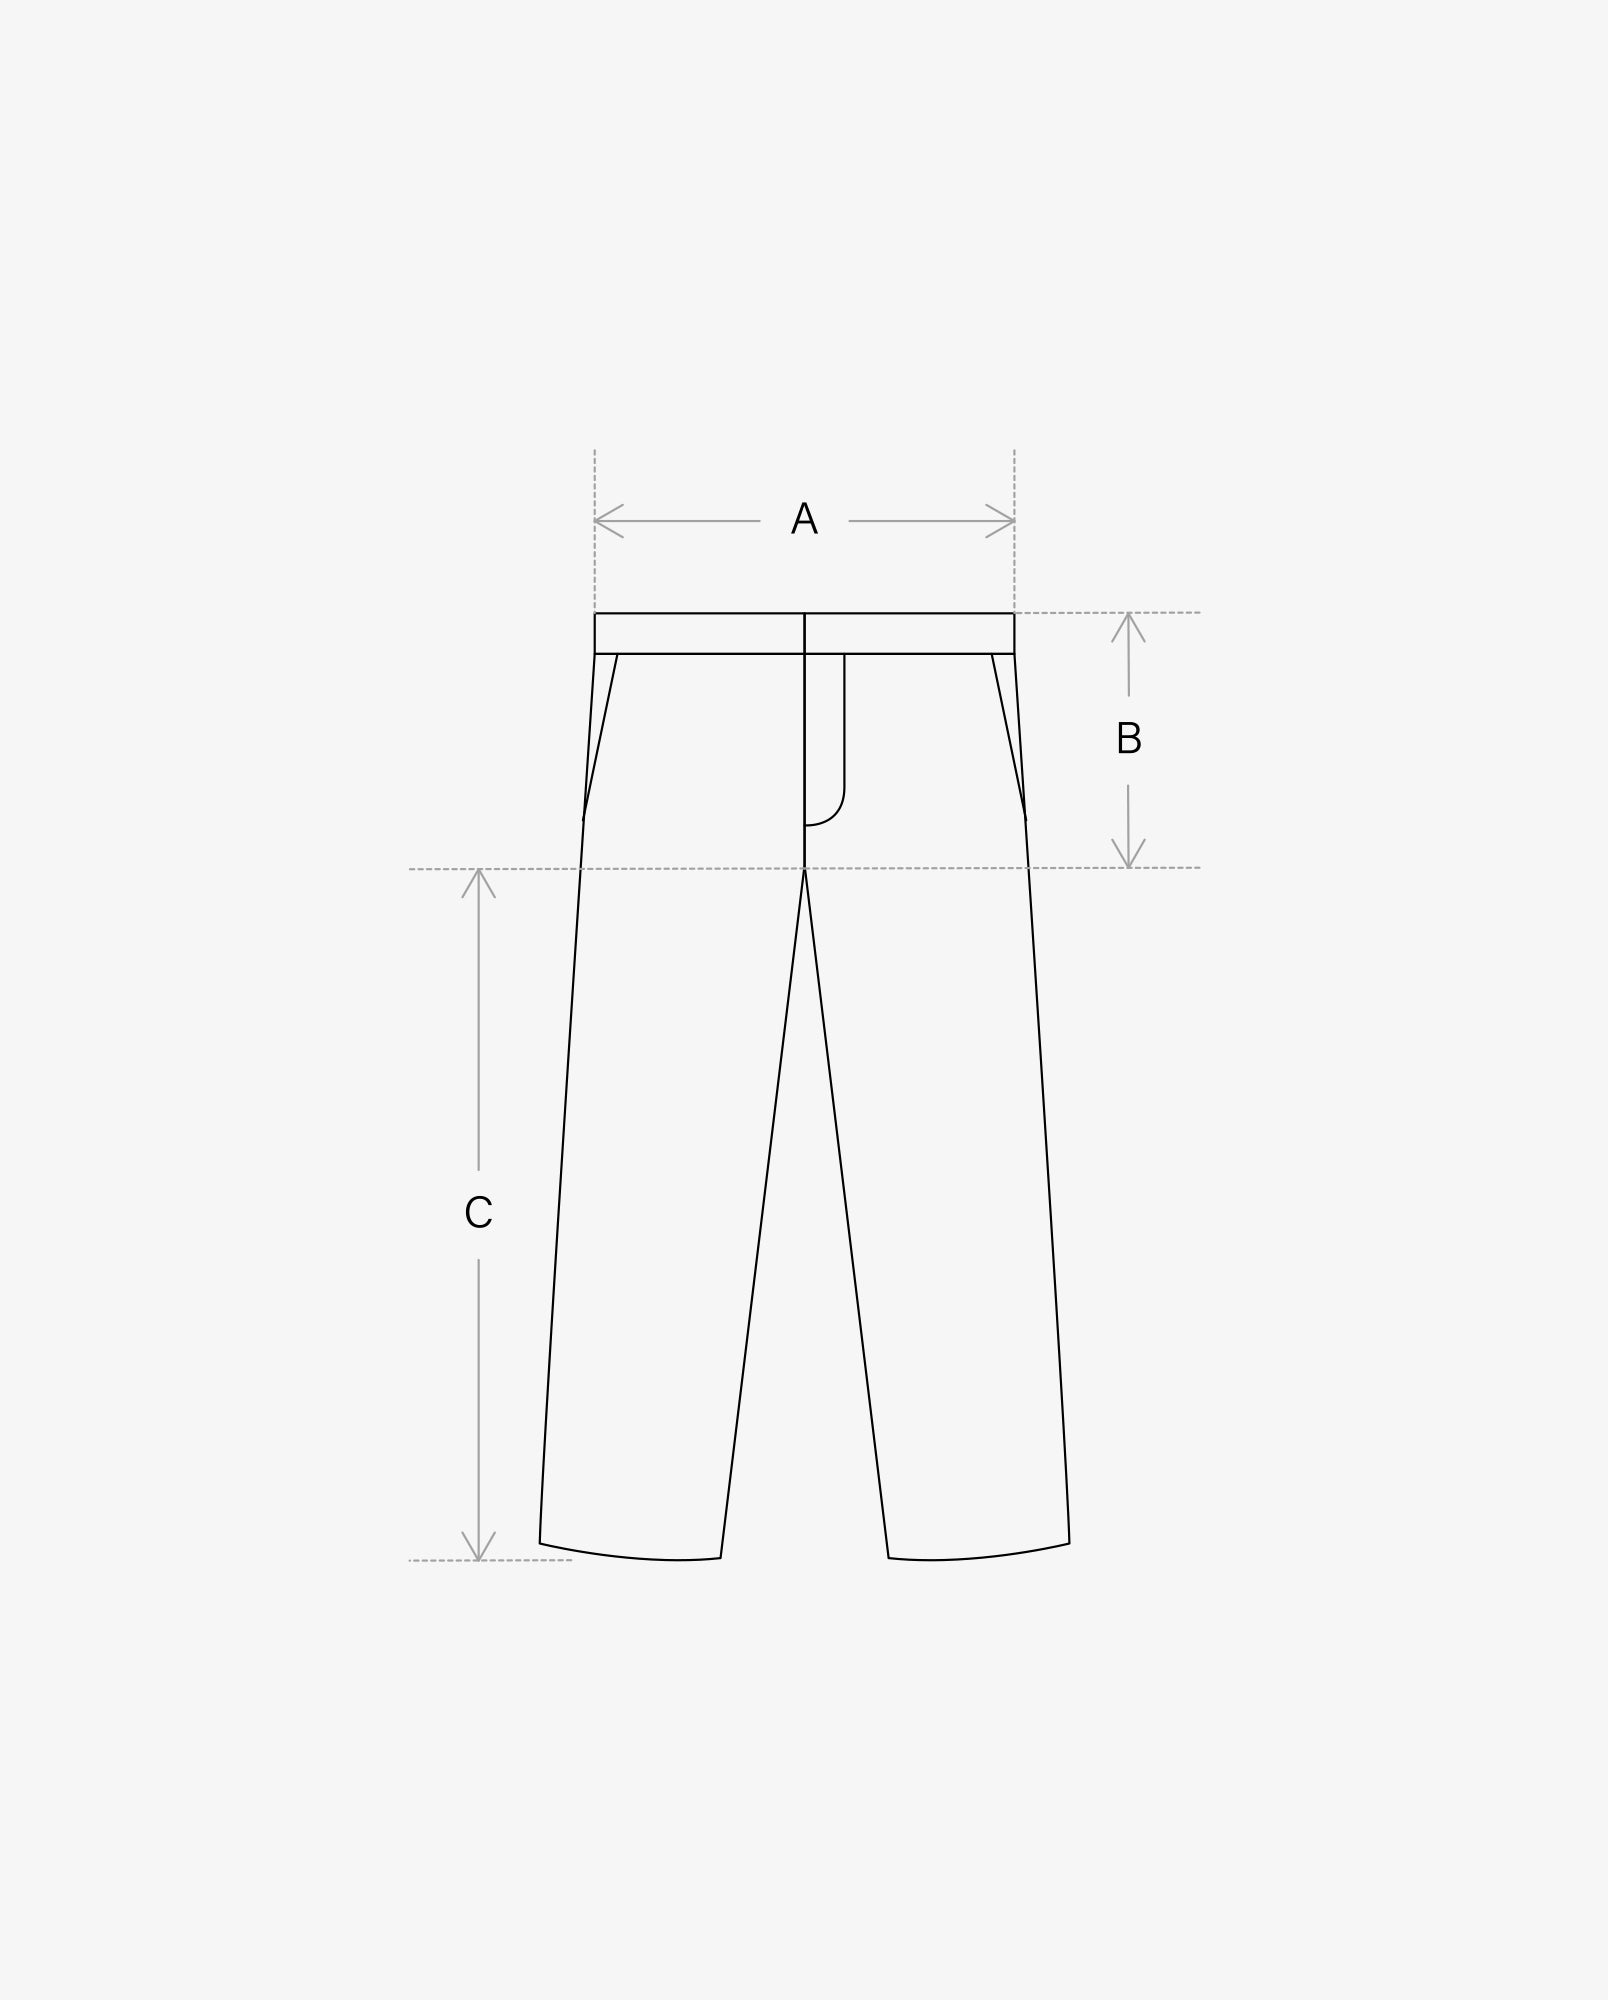 Rip Stop 6 Pocket Pants / Gray